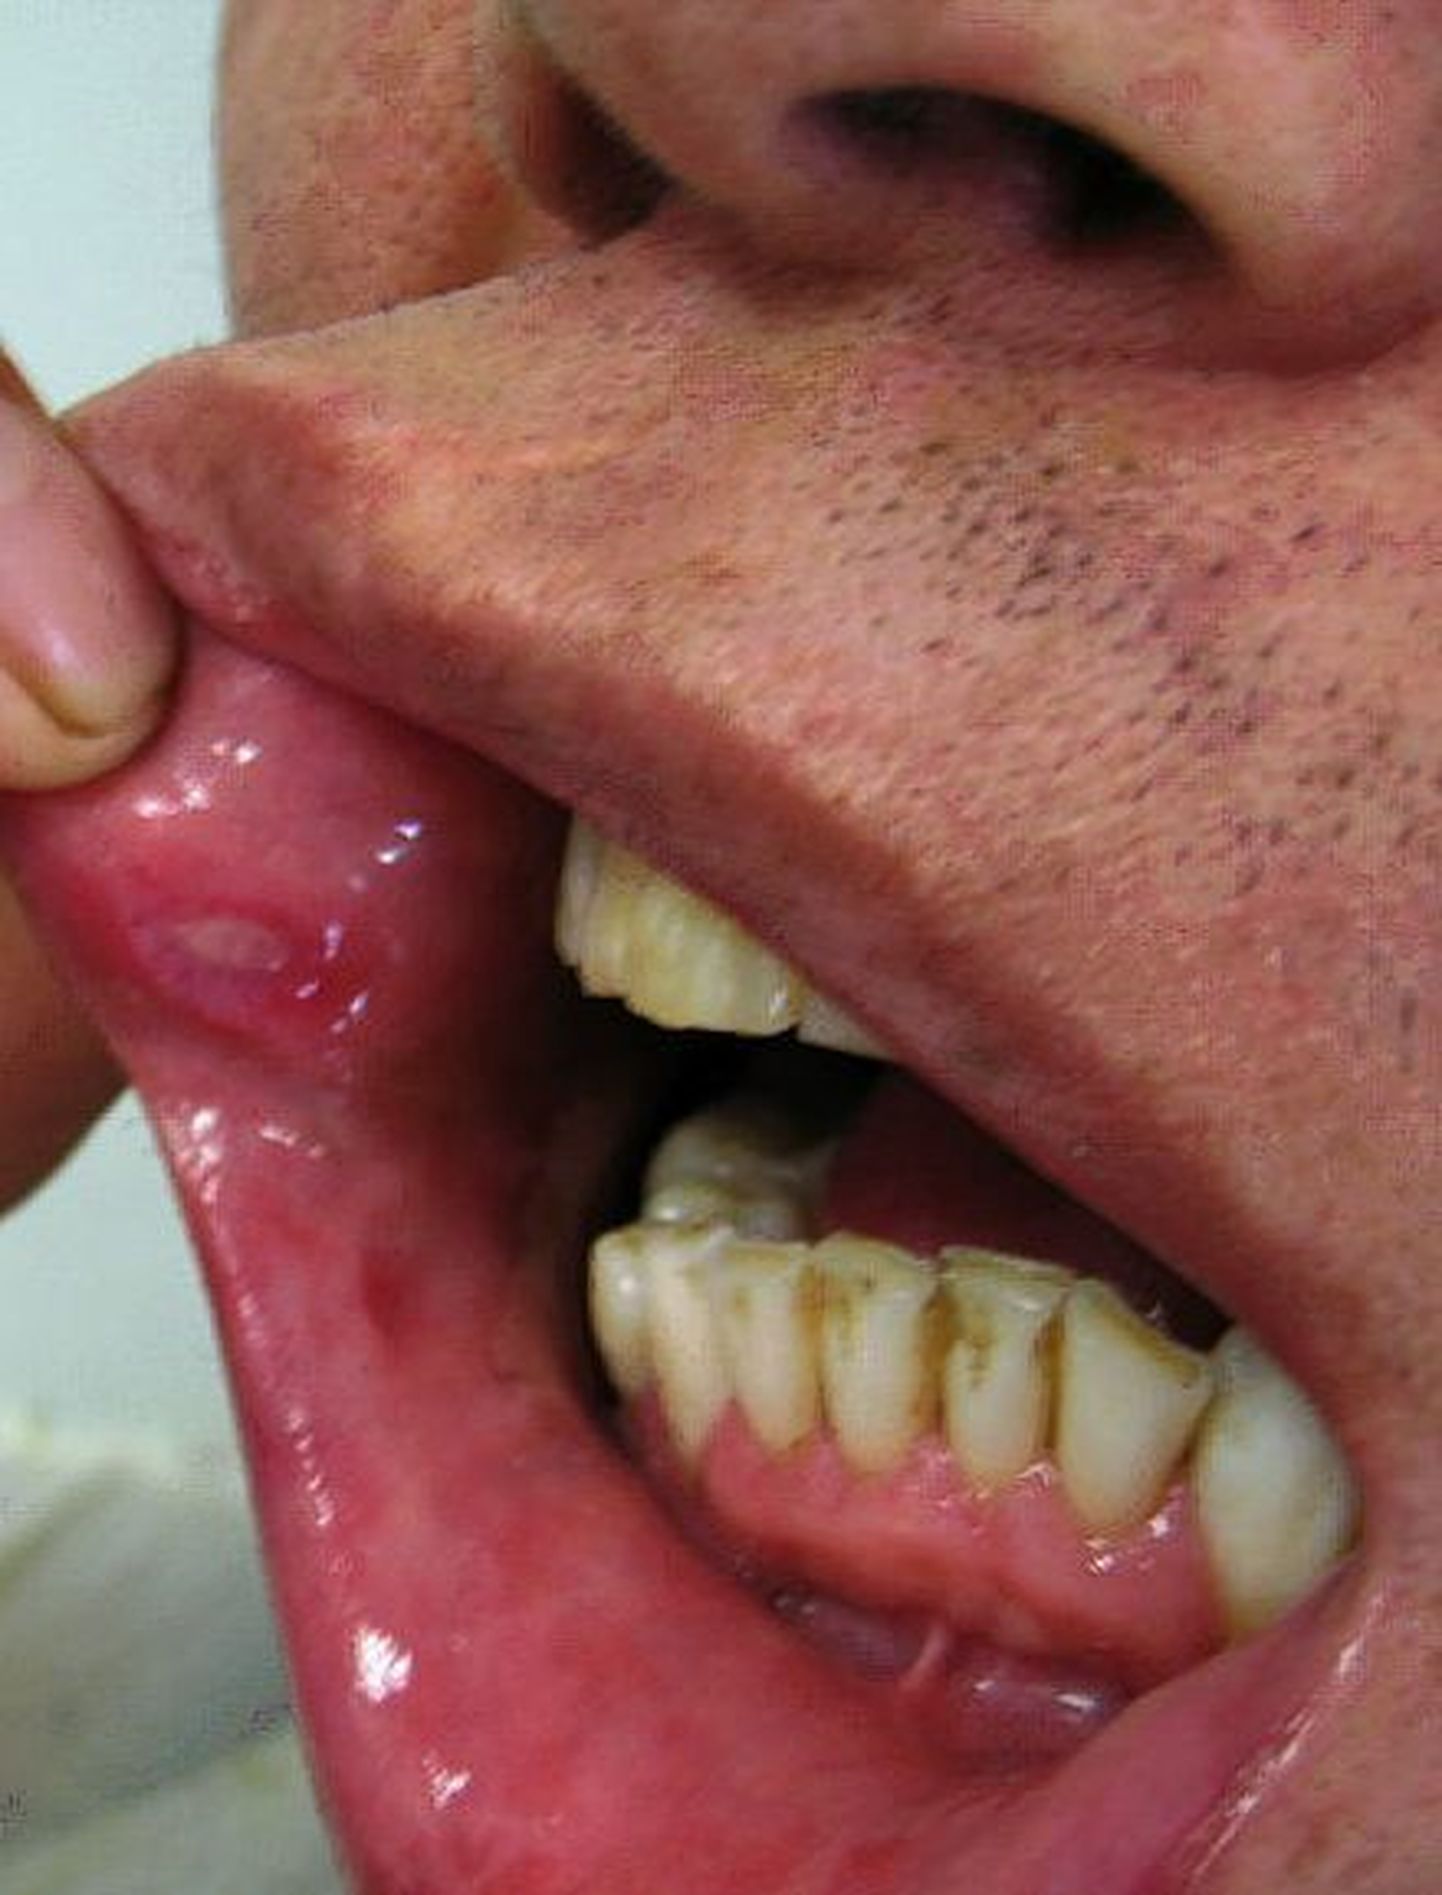 Becheti tõve puhul on haavandid suus ja genitaalidel